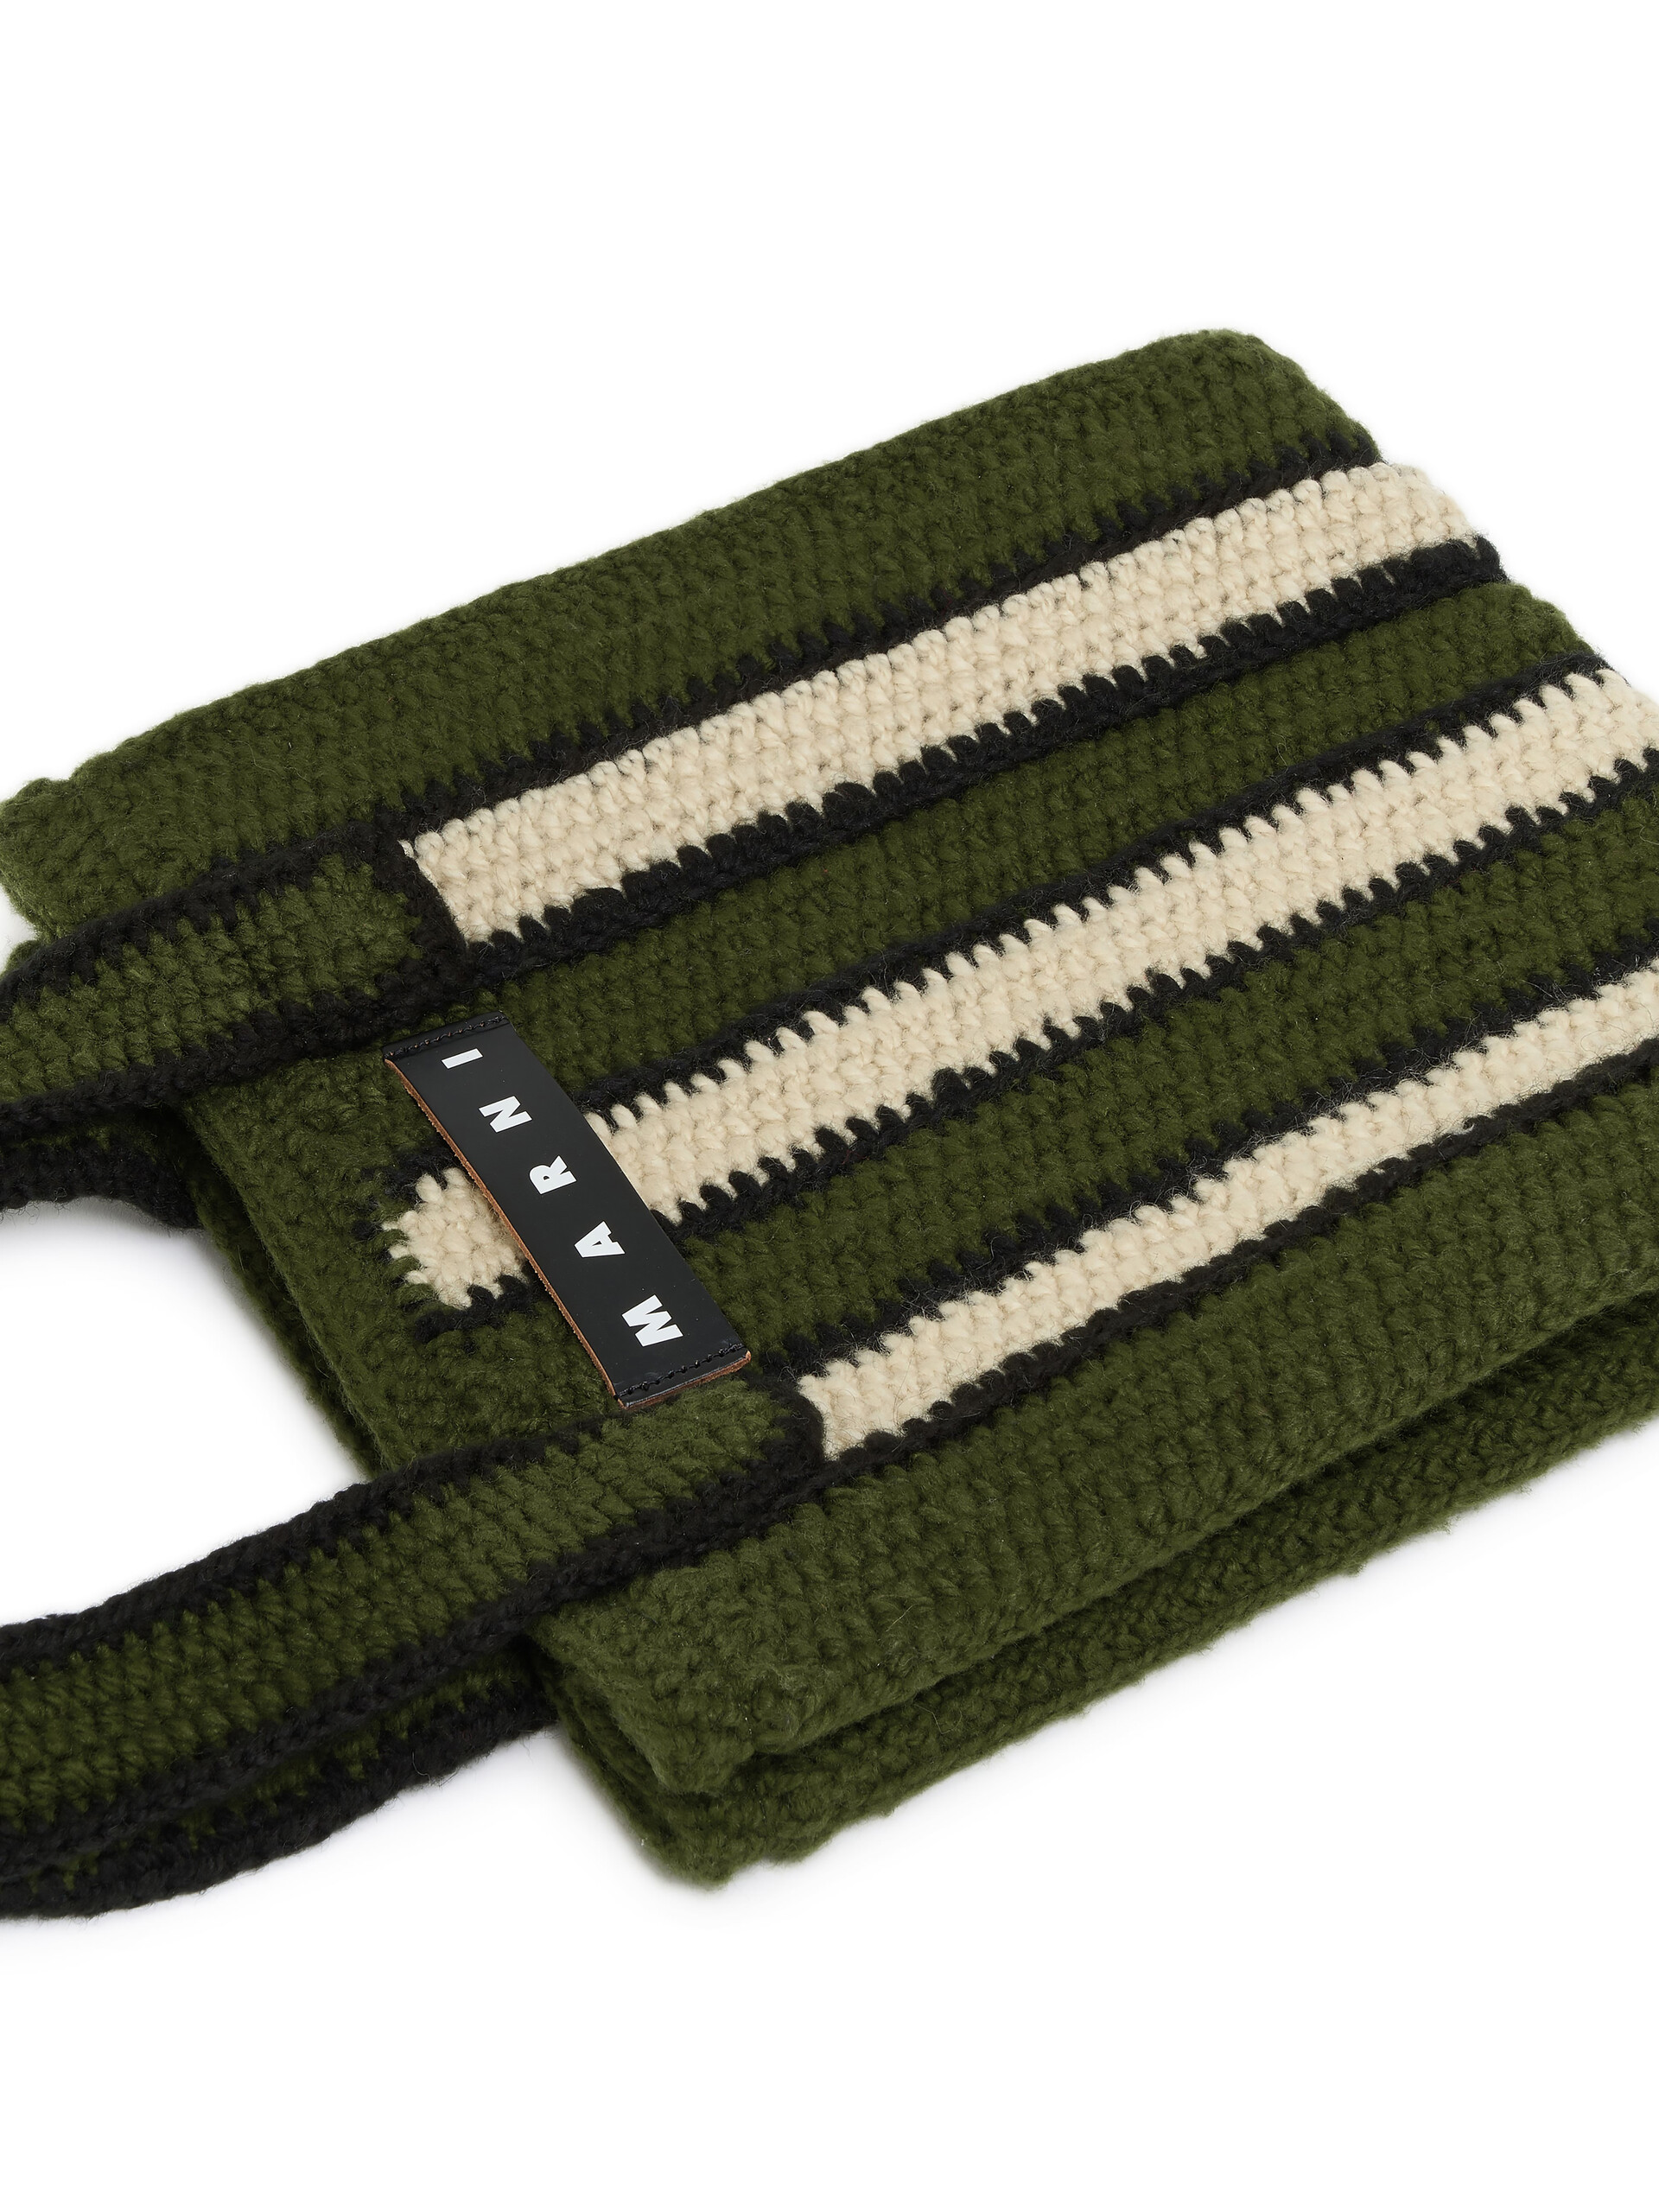 Borsa shopping MARNI MARKET in crochet con motivo rigato in verde bianco e nero - Borse - Image 4